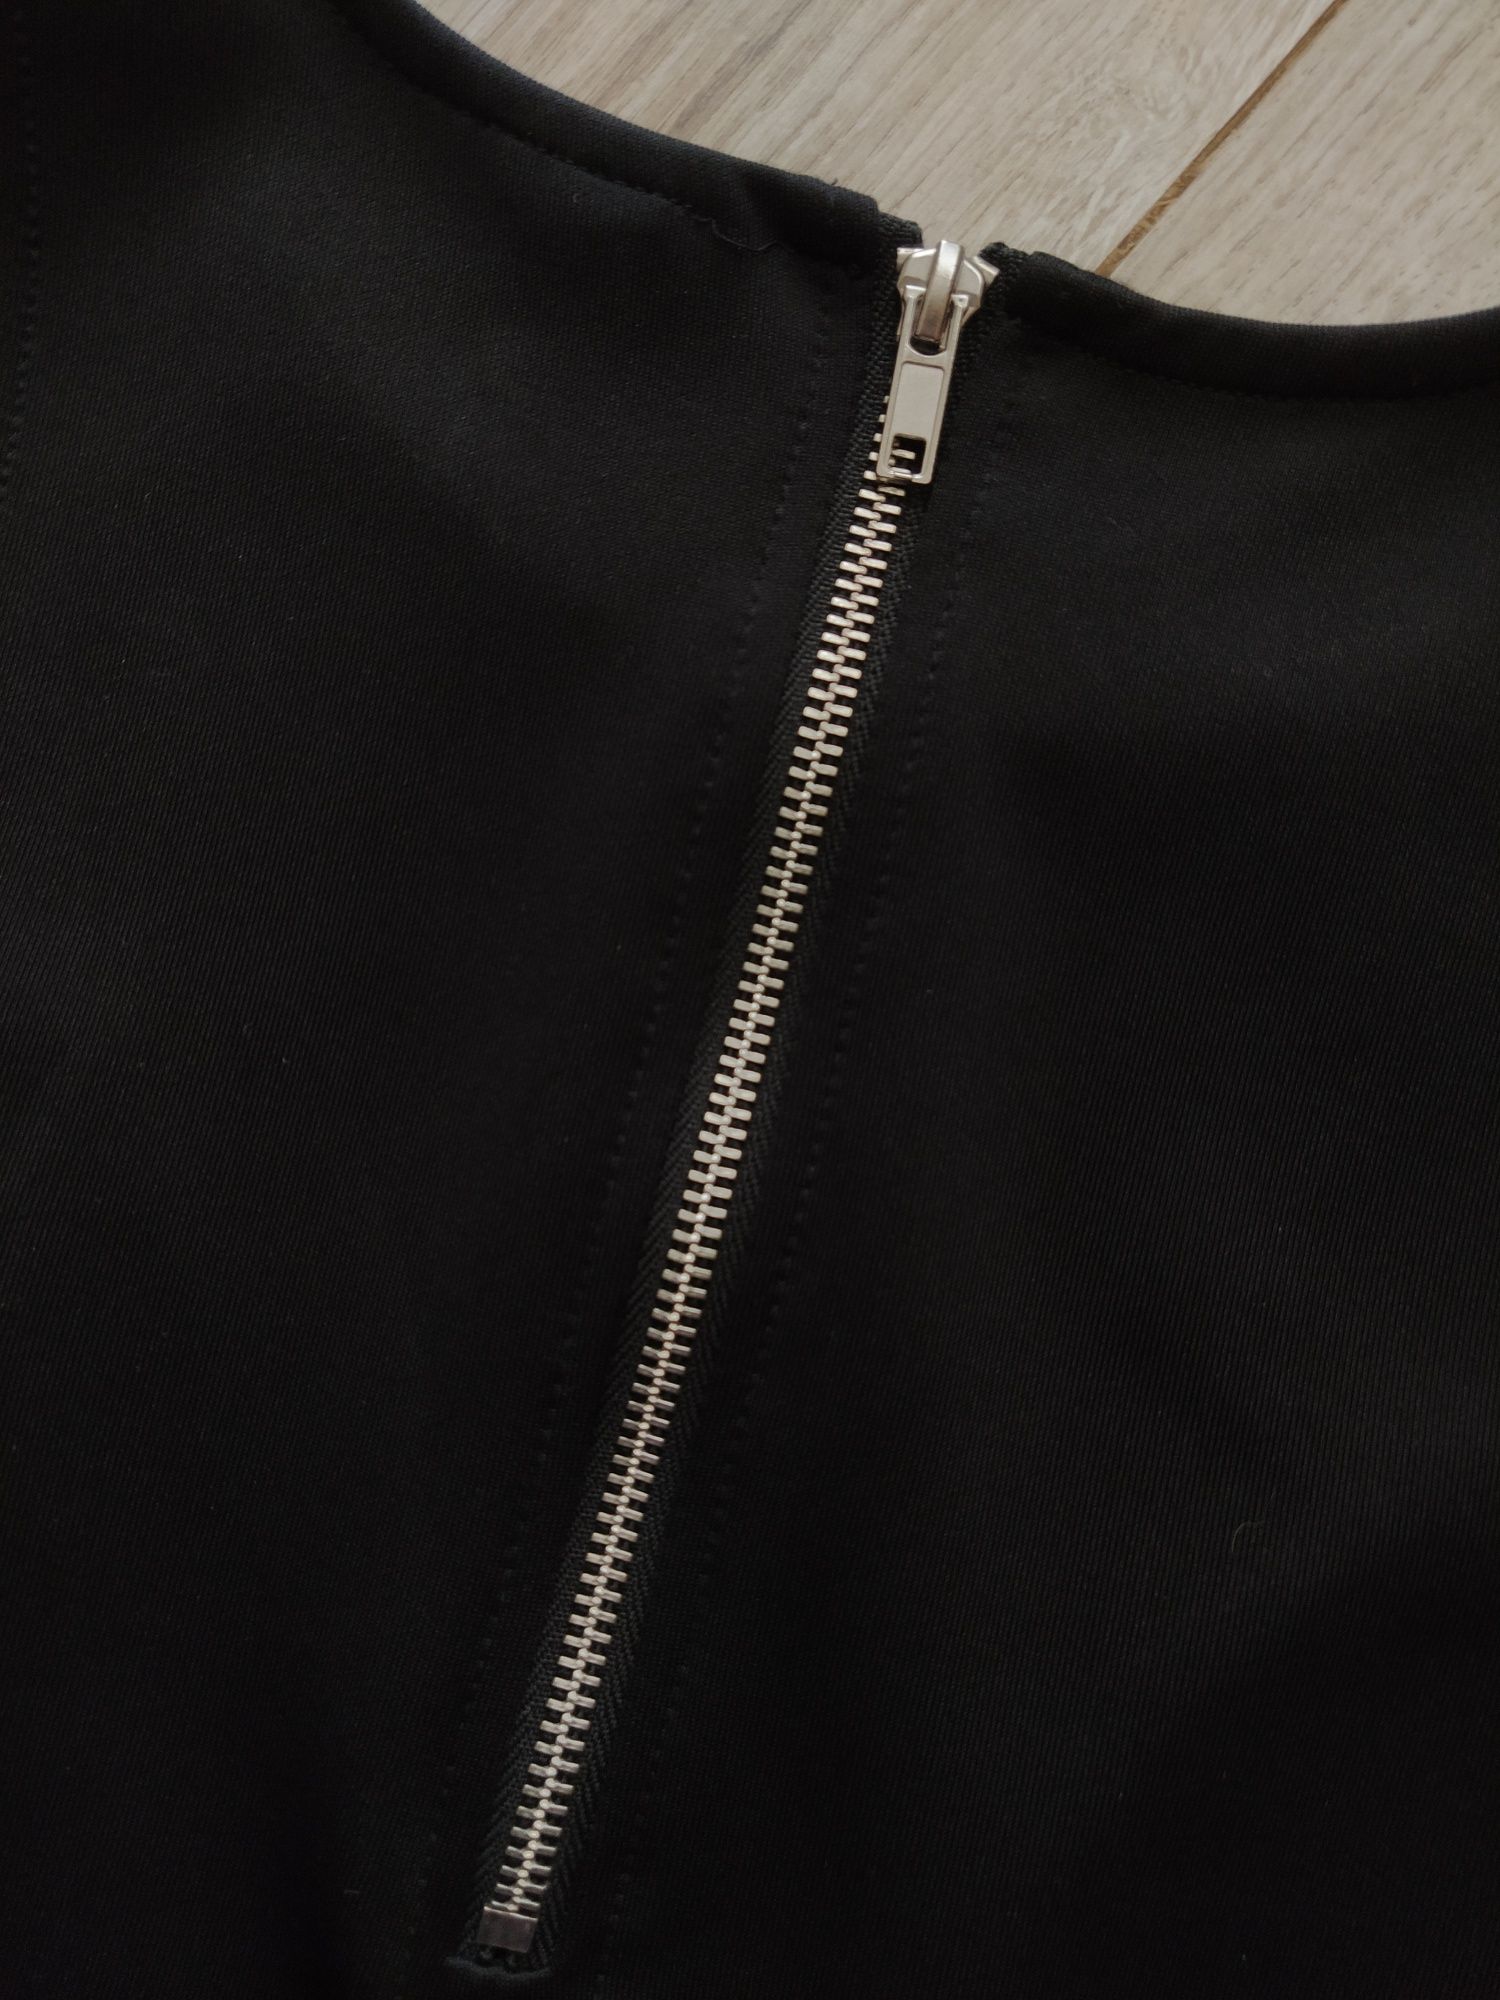 Czarna klasyczna rozkloszowana sukienka H&M 34 xs jak nowa srebrny zam